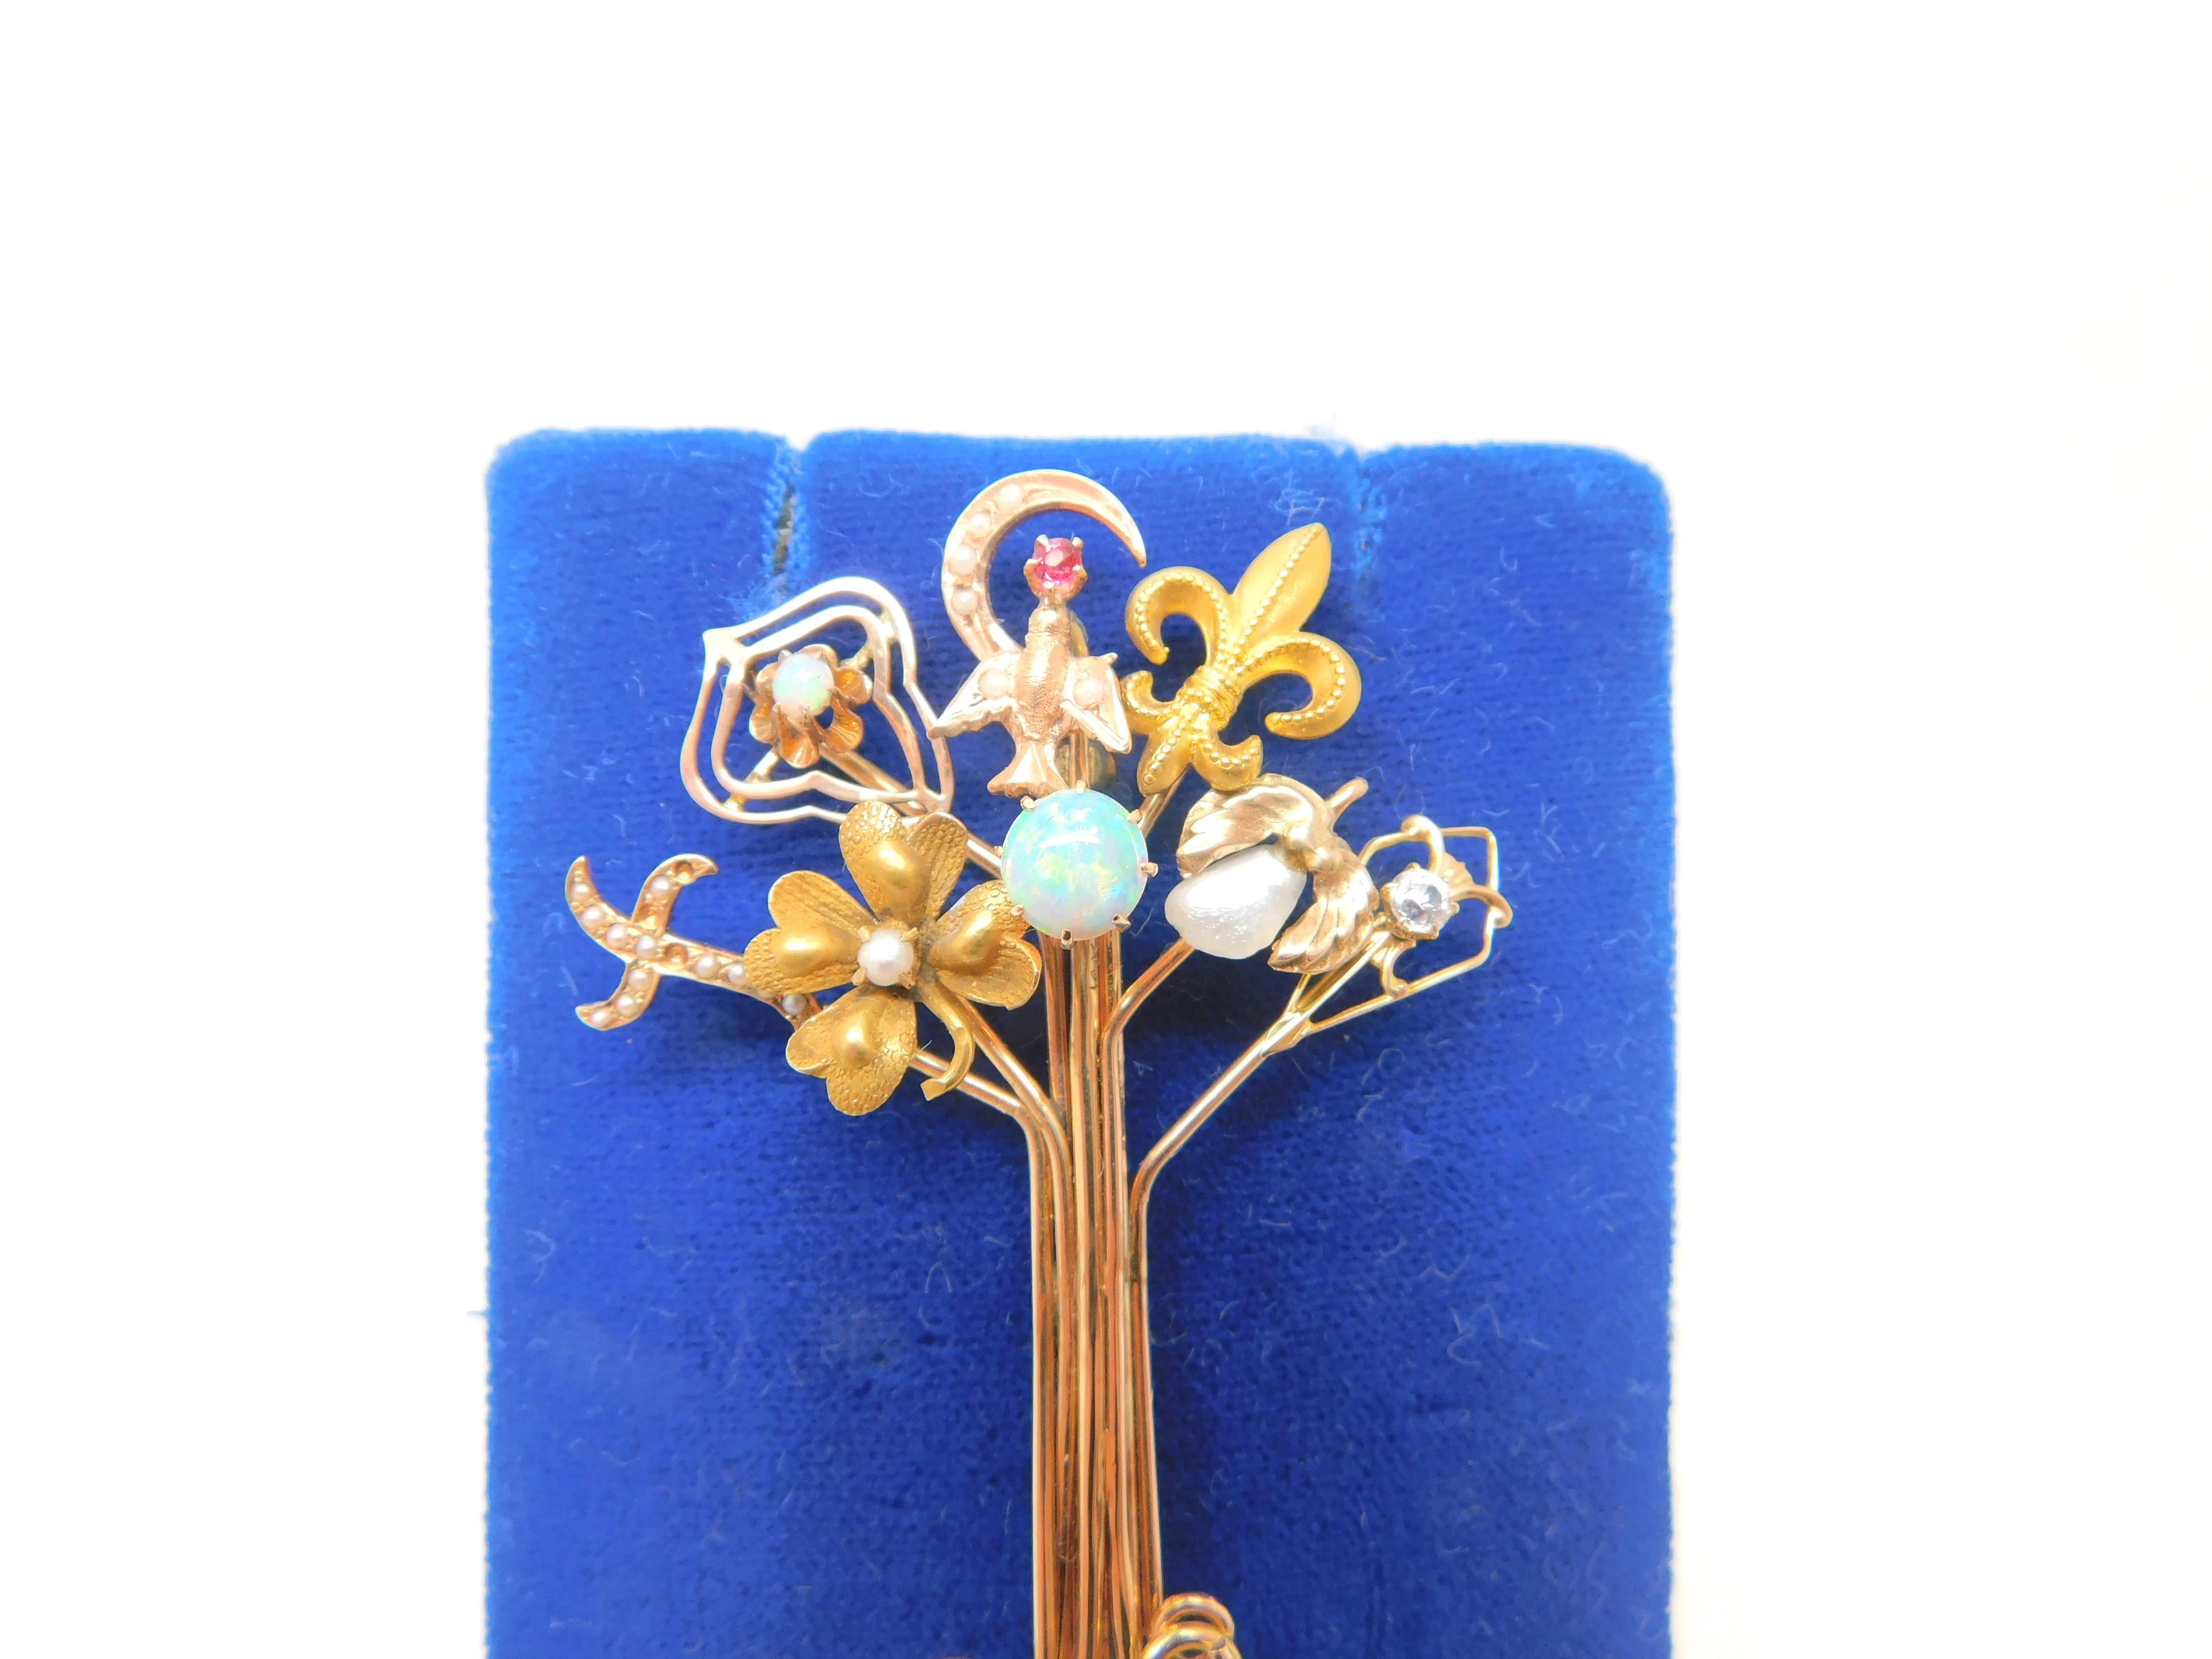 Victorian rose gold stick pin Sammlung Pin in Form eines Baumes.  Der Stift besteht aus 8 Stiften, die 10K und 14K sind.  Zu den Anstecknadeln gehören: ein Opal, eine Fleur de lis, eine Süßwasserperle, eine Taube mit einem Rubin, ein Kreuz mit